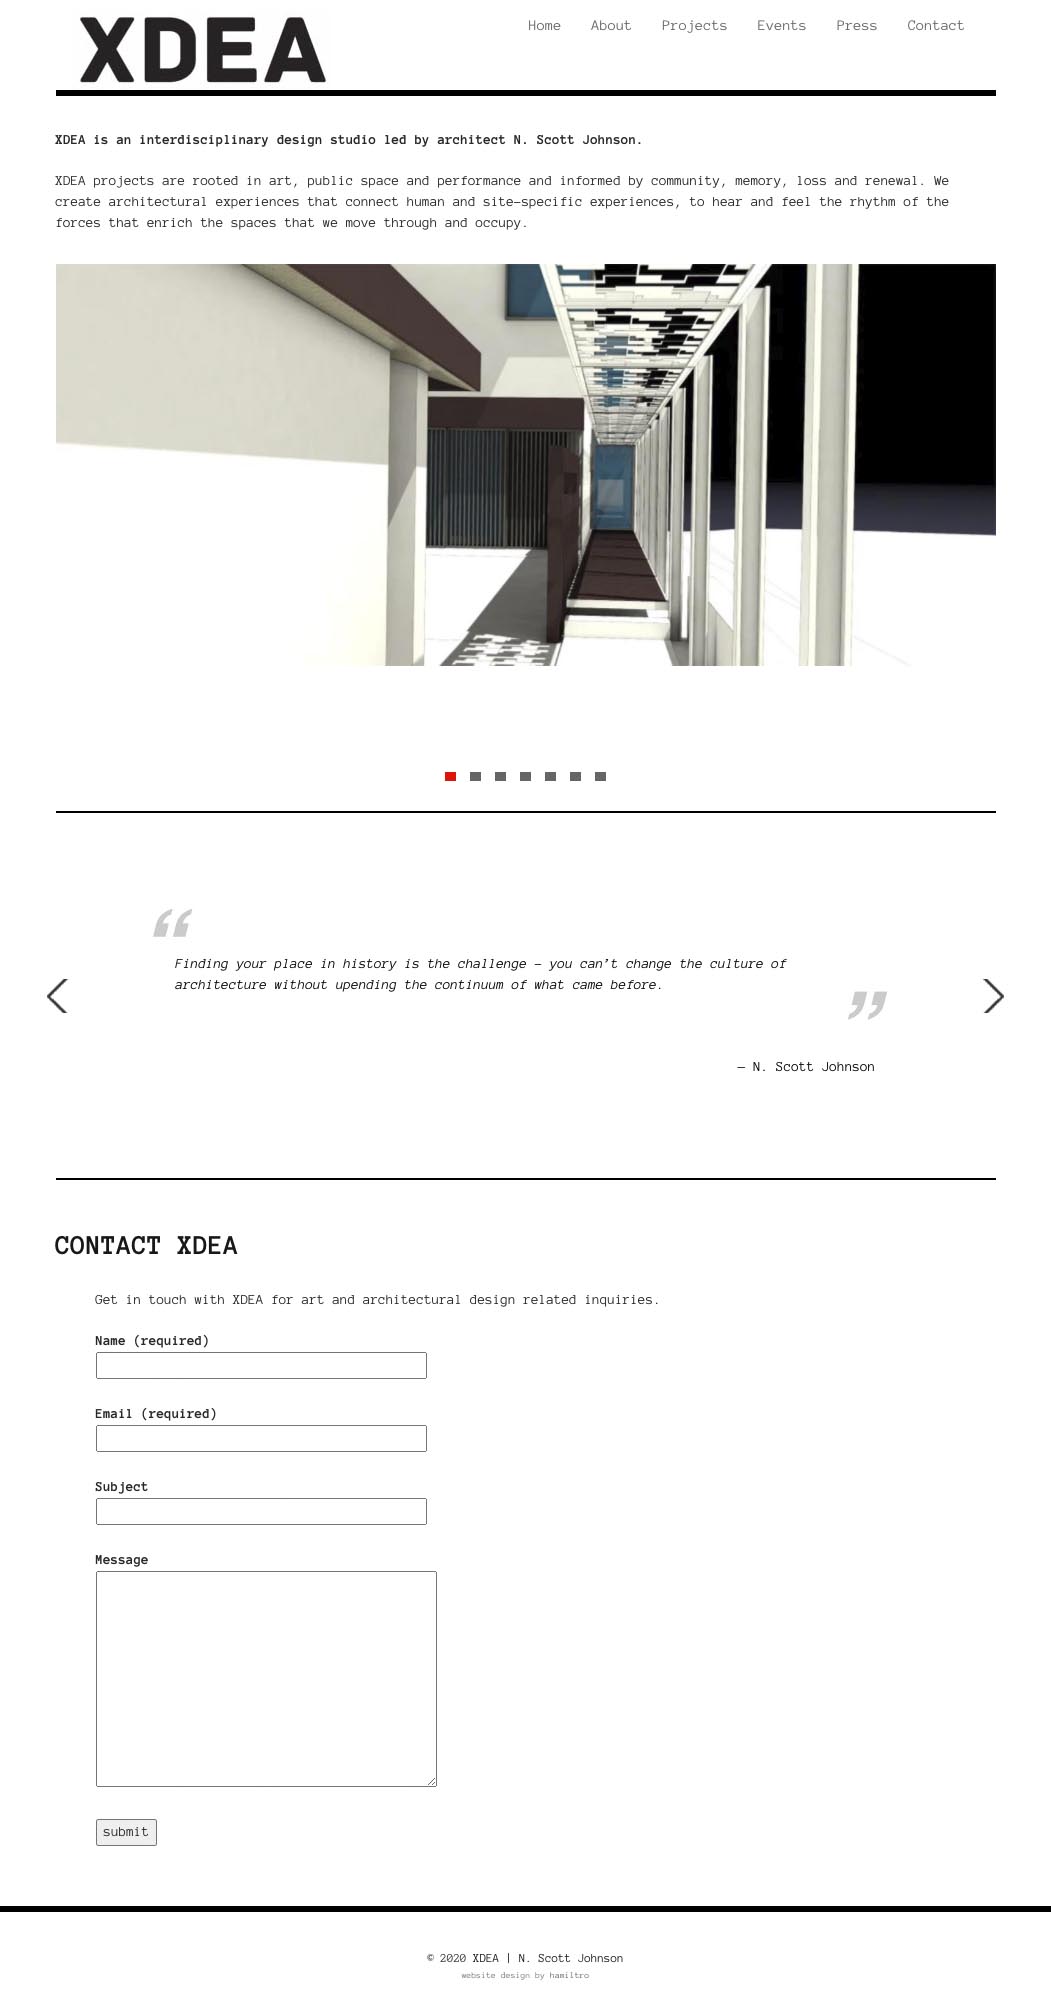 website design for an architect - N. Scott Johnson - home